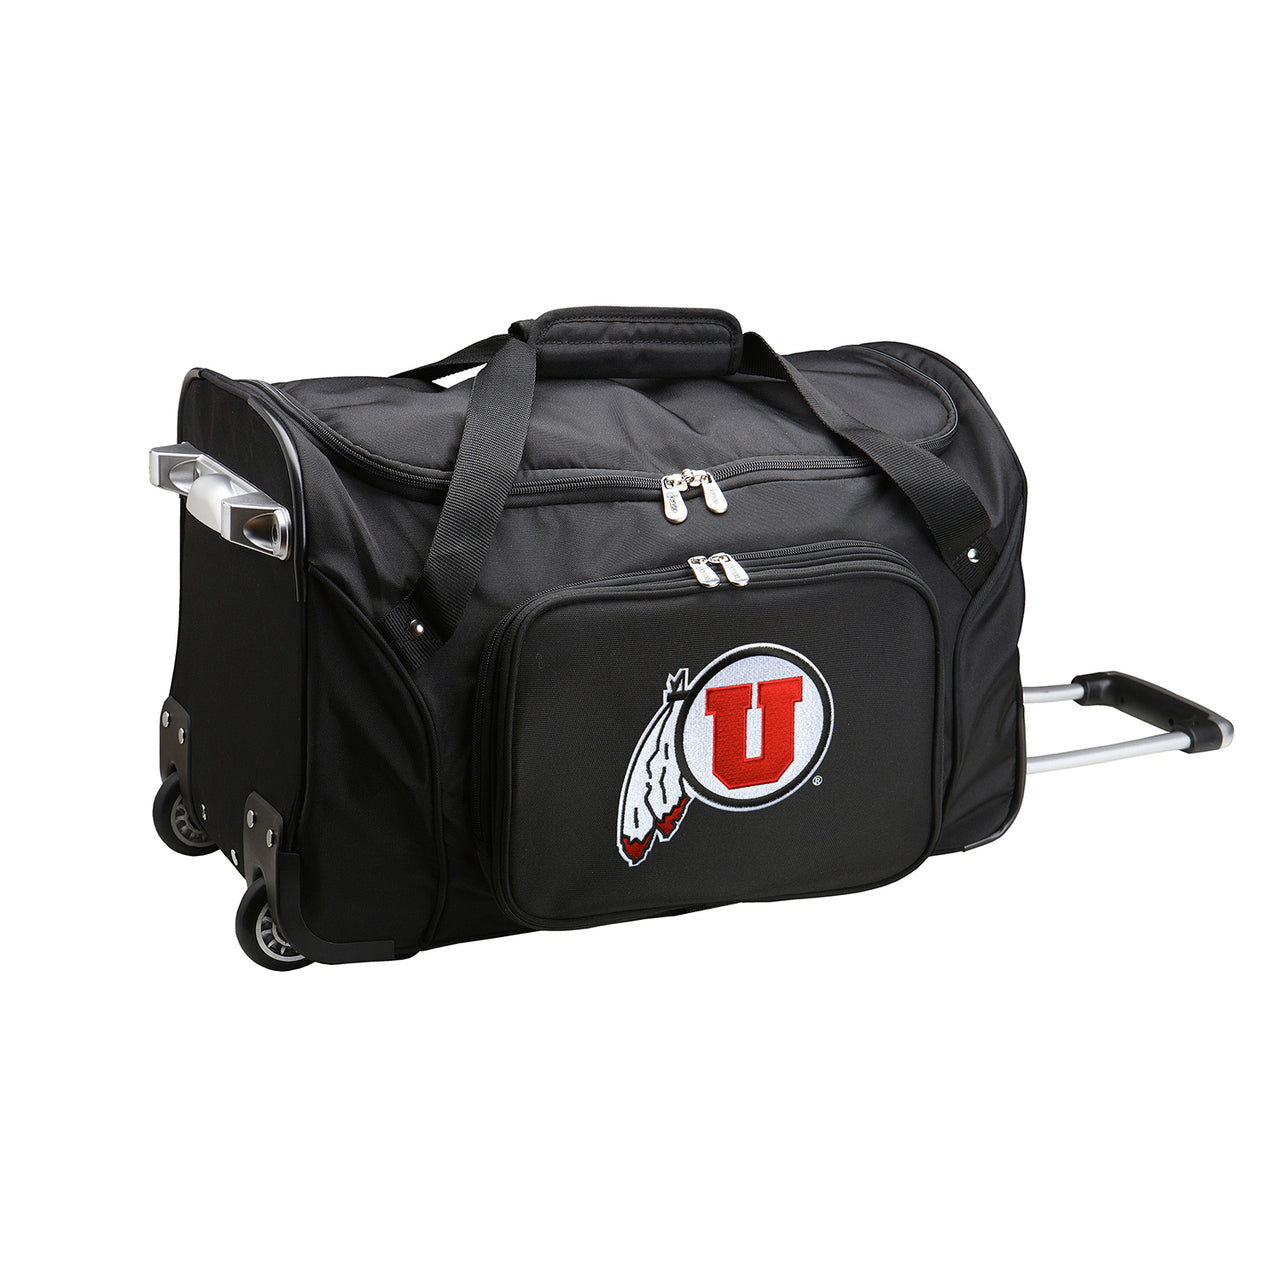 Utah Utes Luggage | Utah Utes Wheeled Carry On Luggage